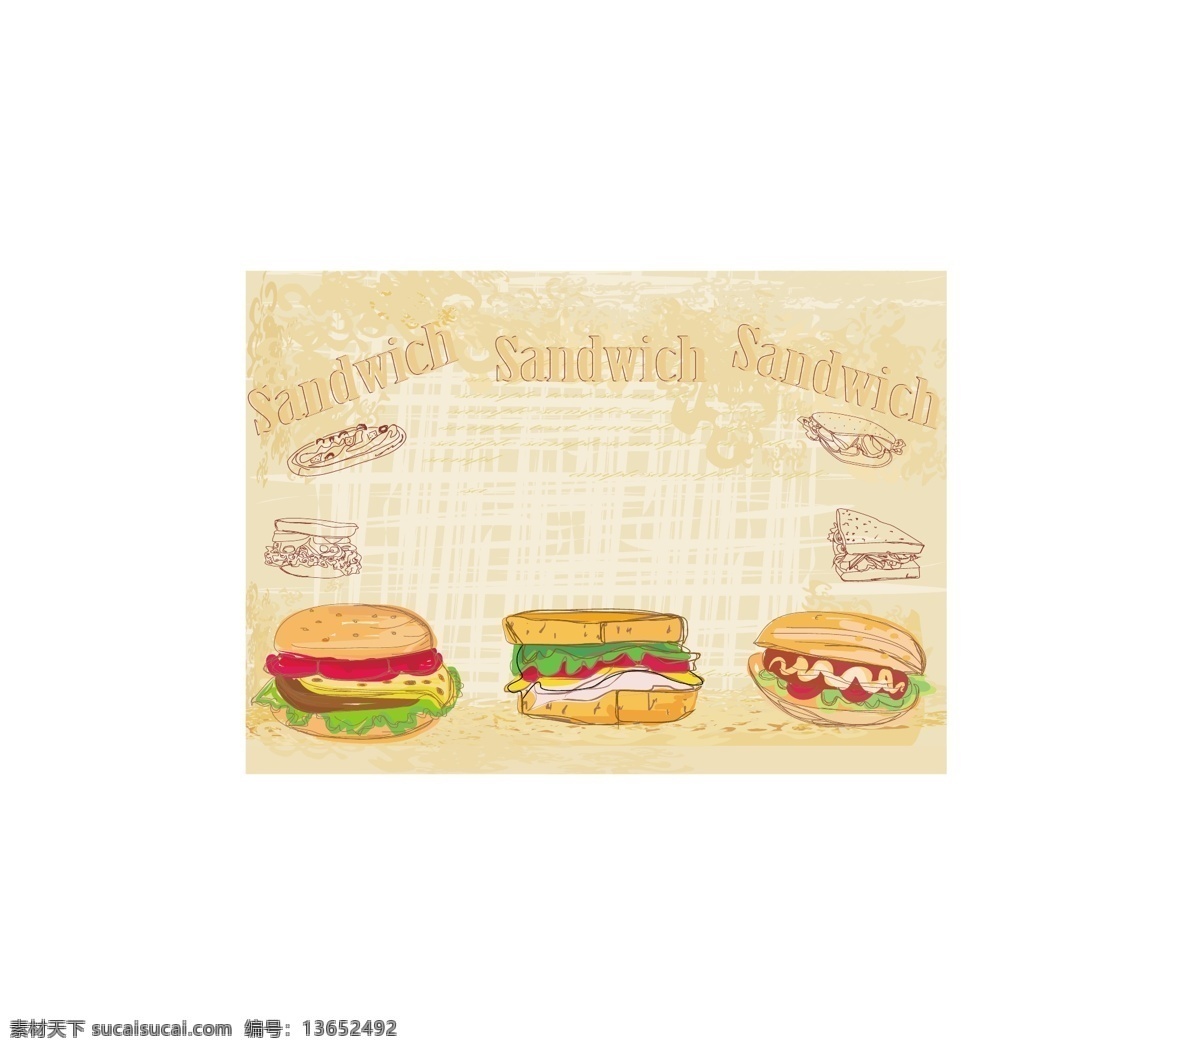 快餐 美食 插画 矢量 模板下载 汉堡包 美食插画 快餐美食 卡通食物 餐饮美食 生活百科 矢量素材 白色